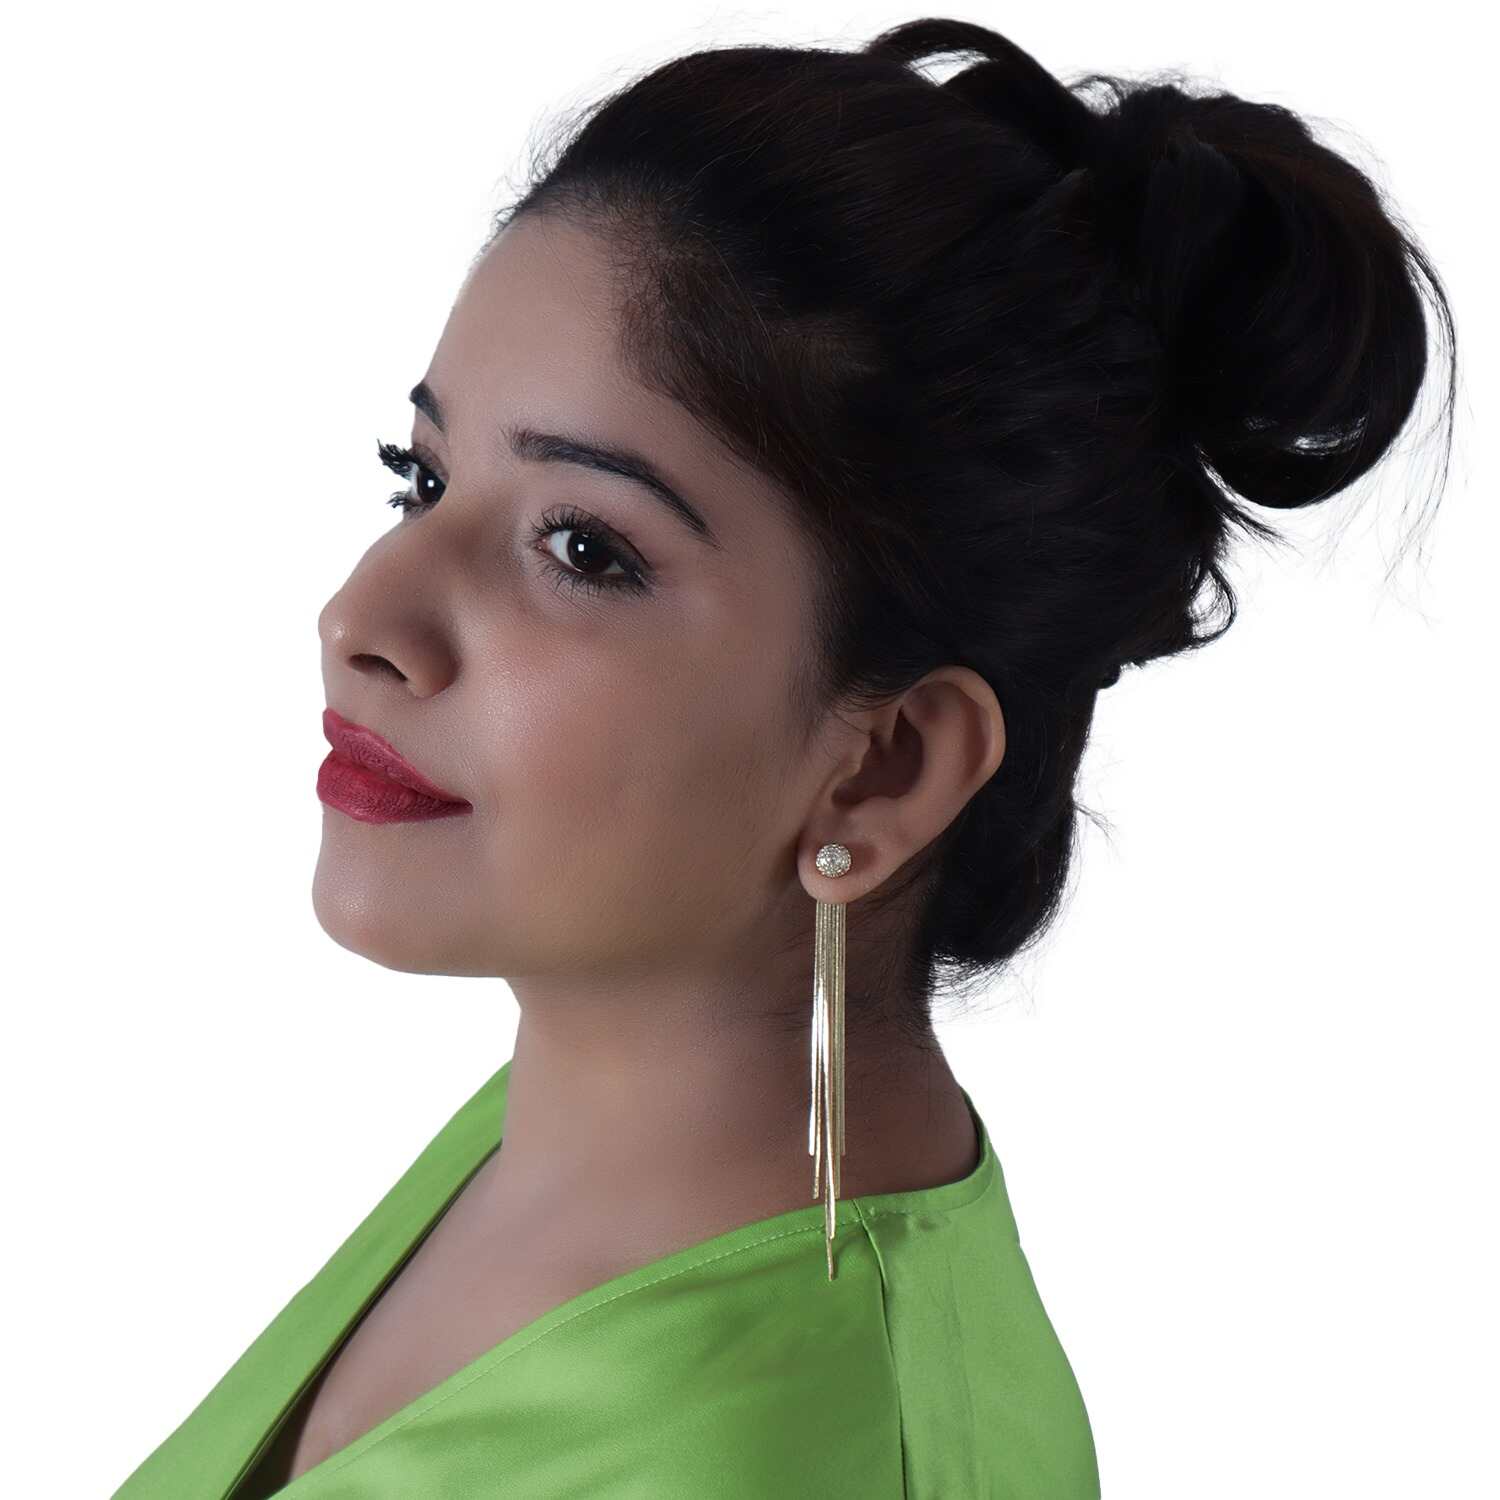 Gold Earrings - Best Fancy Latest Gold Earring Designs/Gold Ear Tops For  Women online on Flipkart